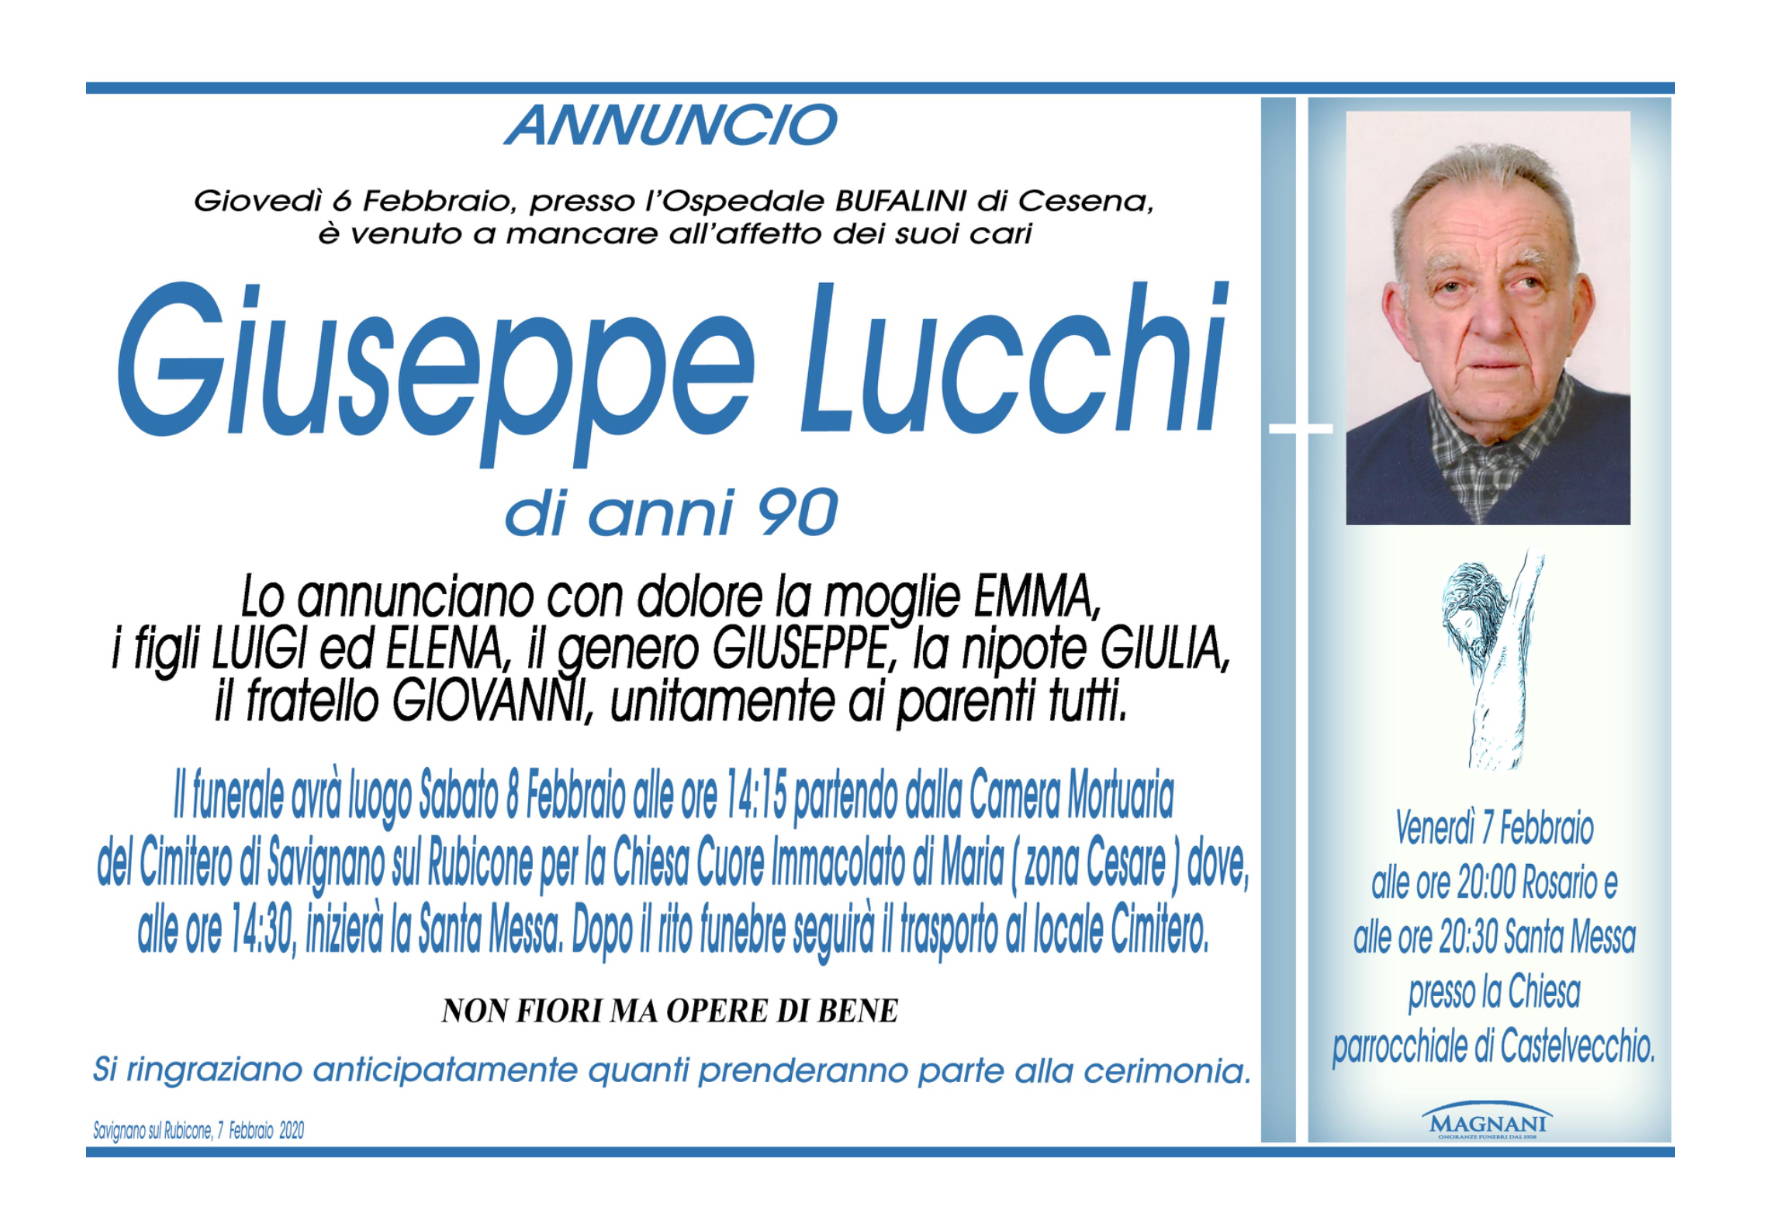 Giuseppe Lucchi